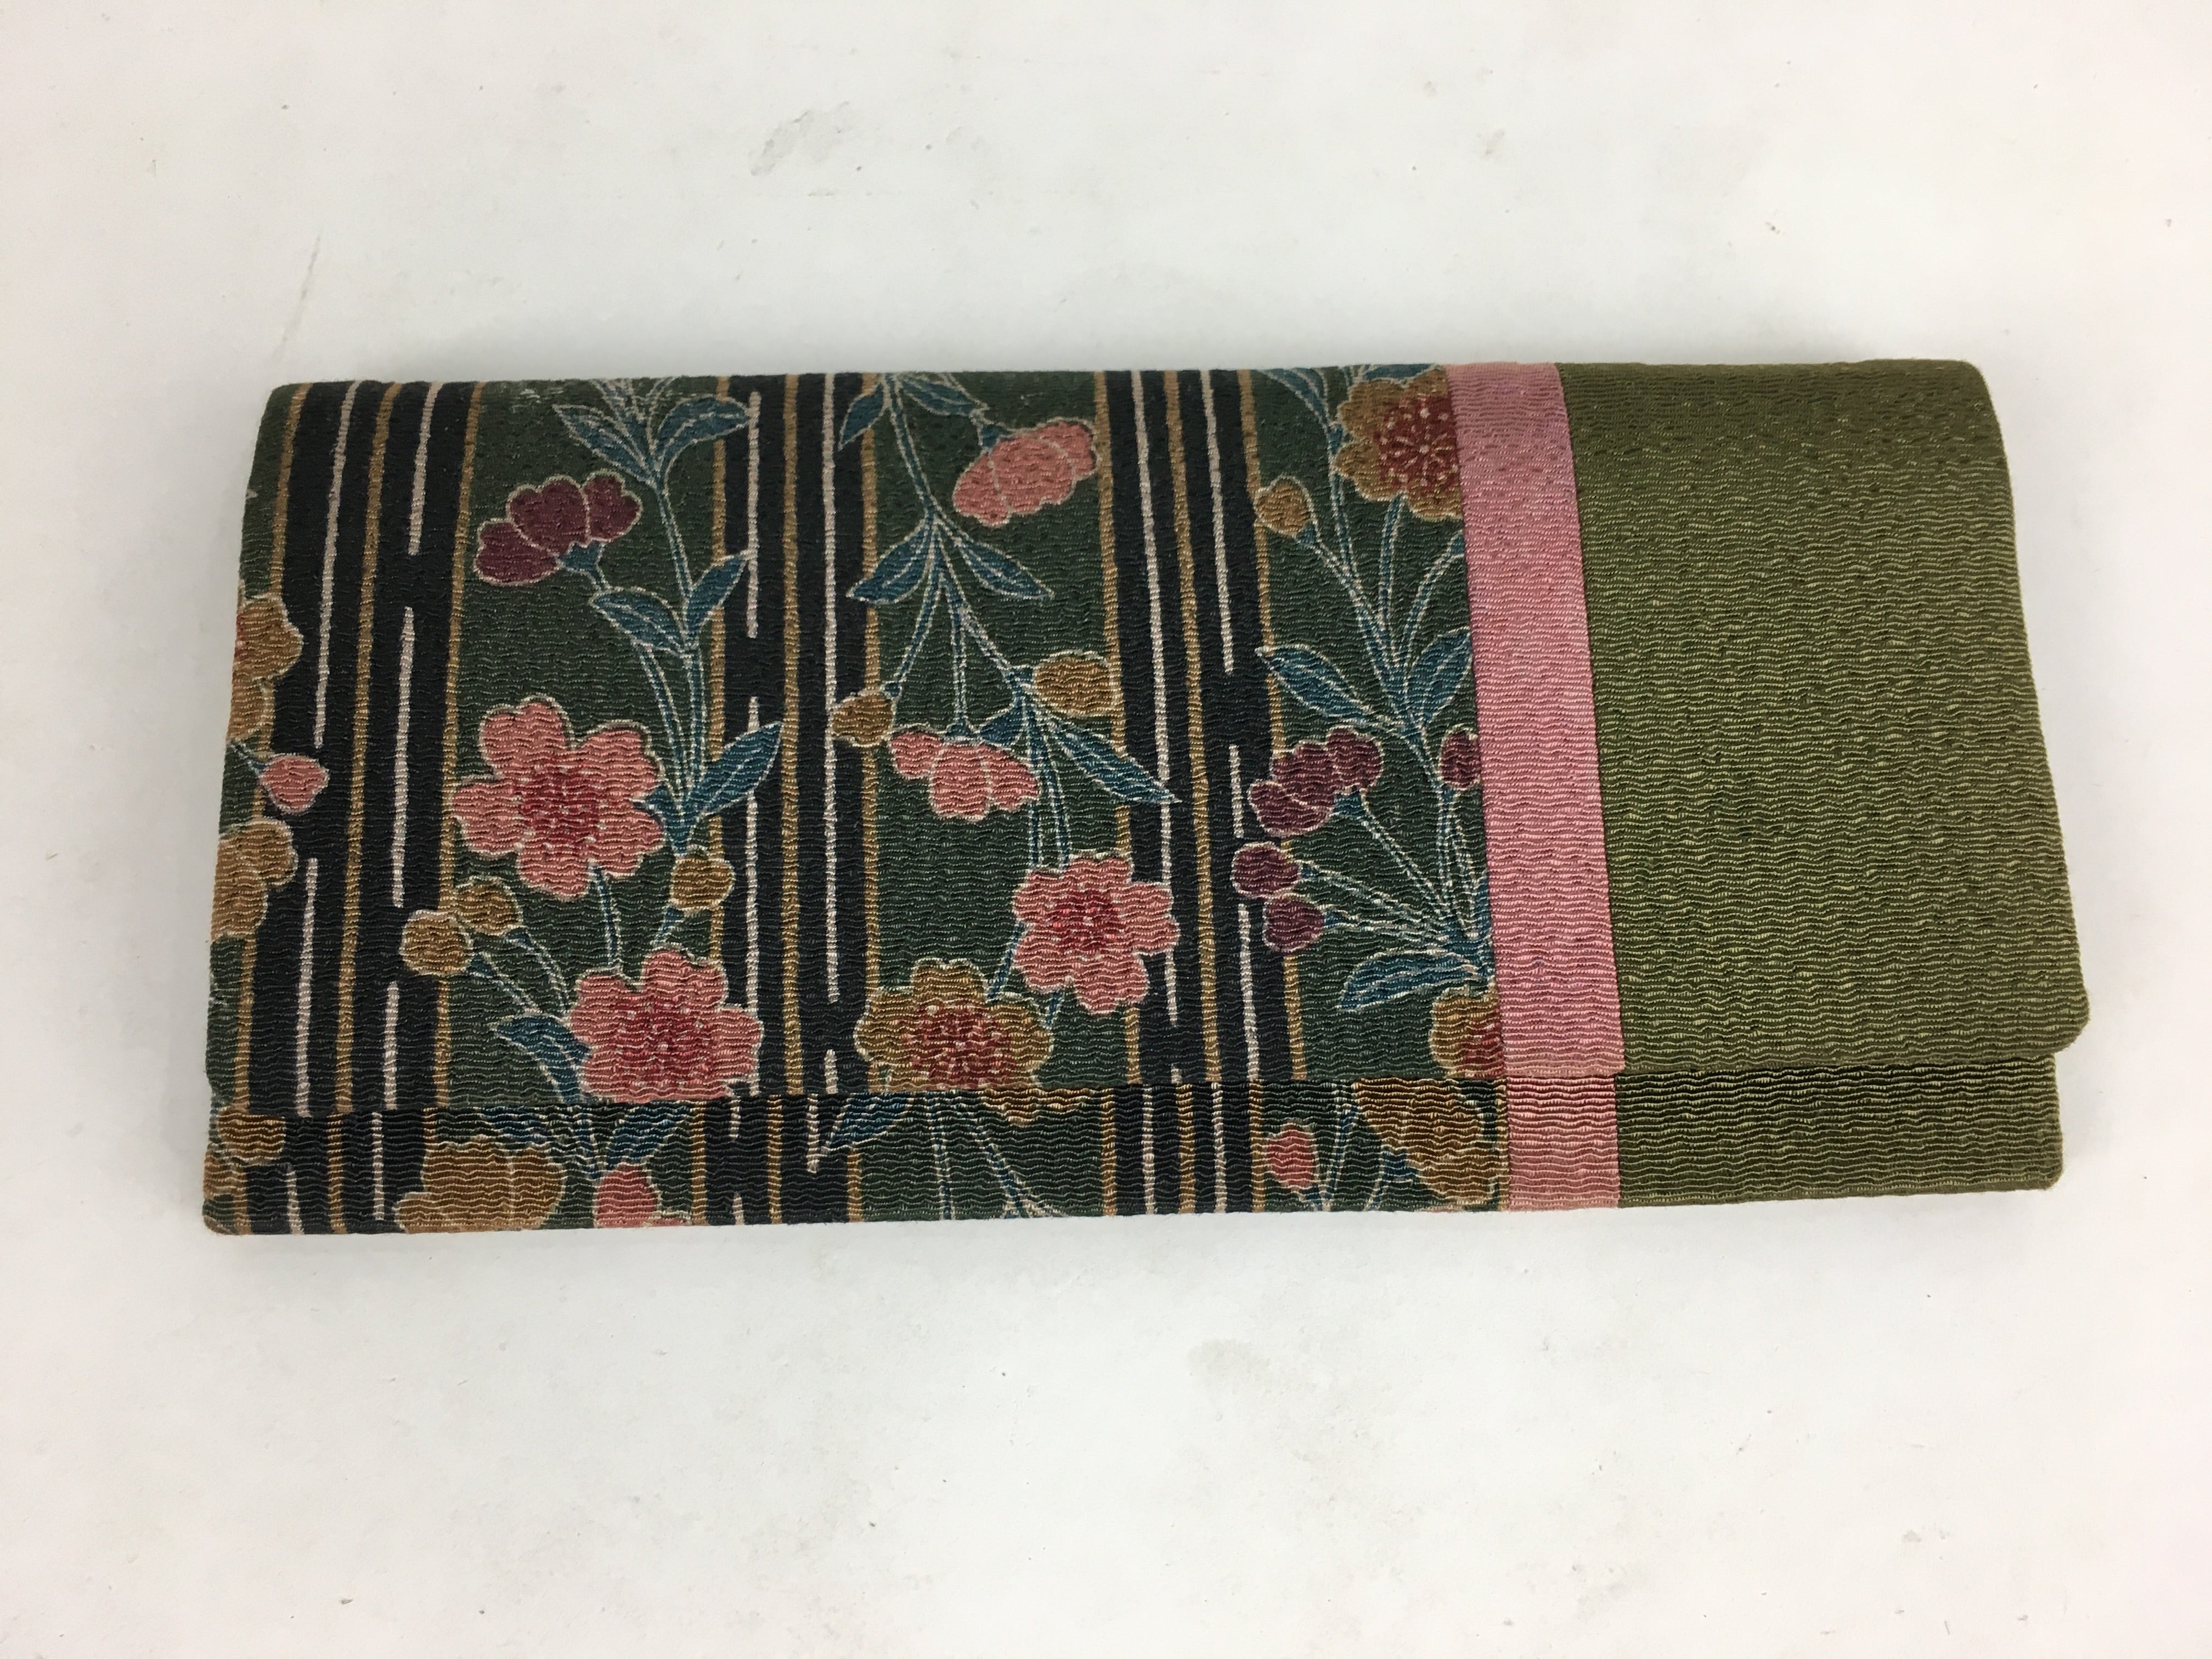 Japanese Folk Craft Fabric Long Wallet Vtg Coin Purse Zipper Pink